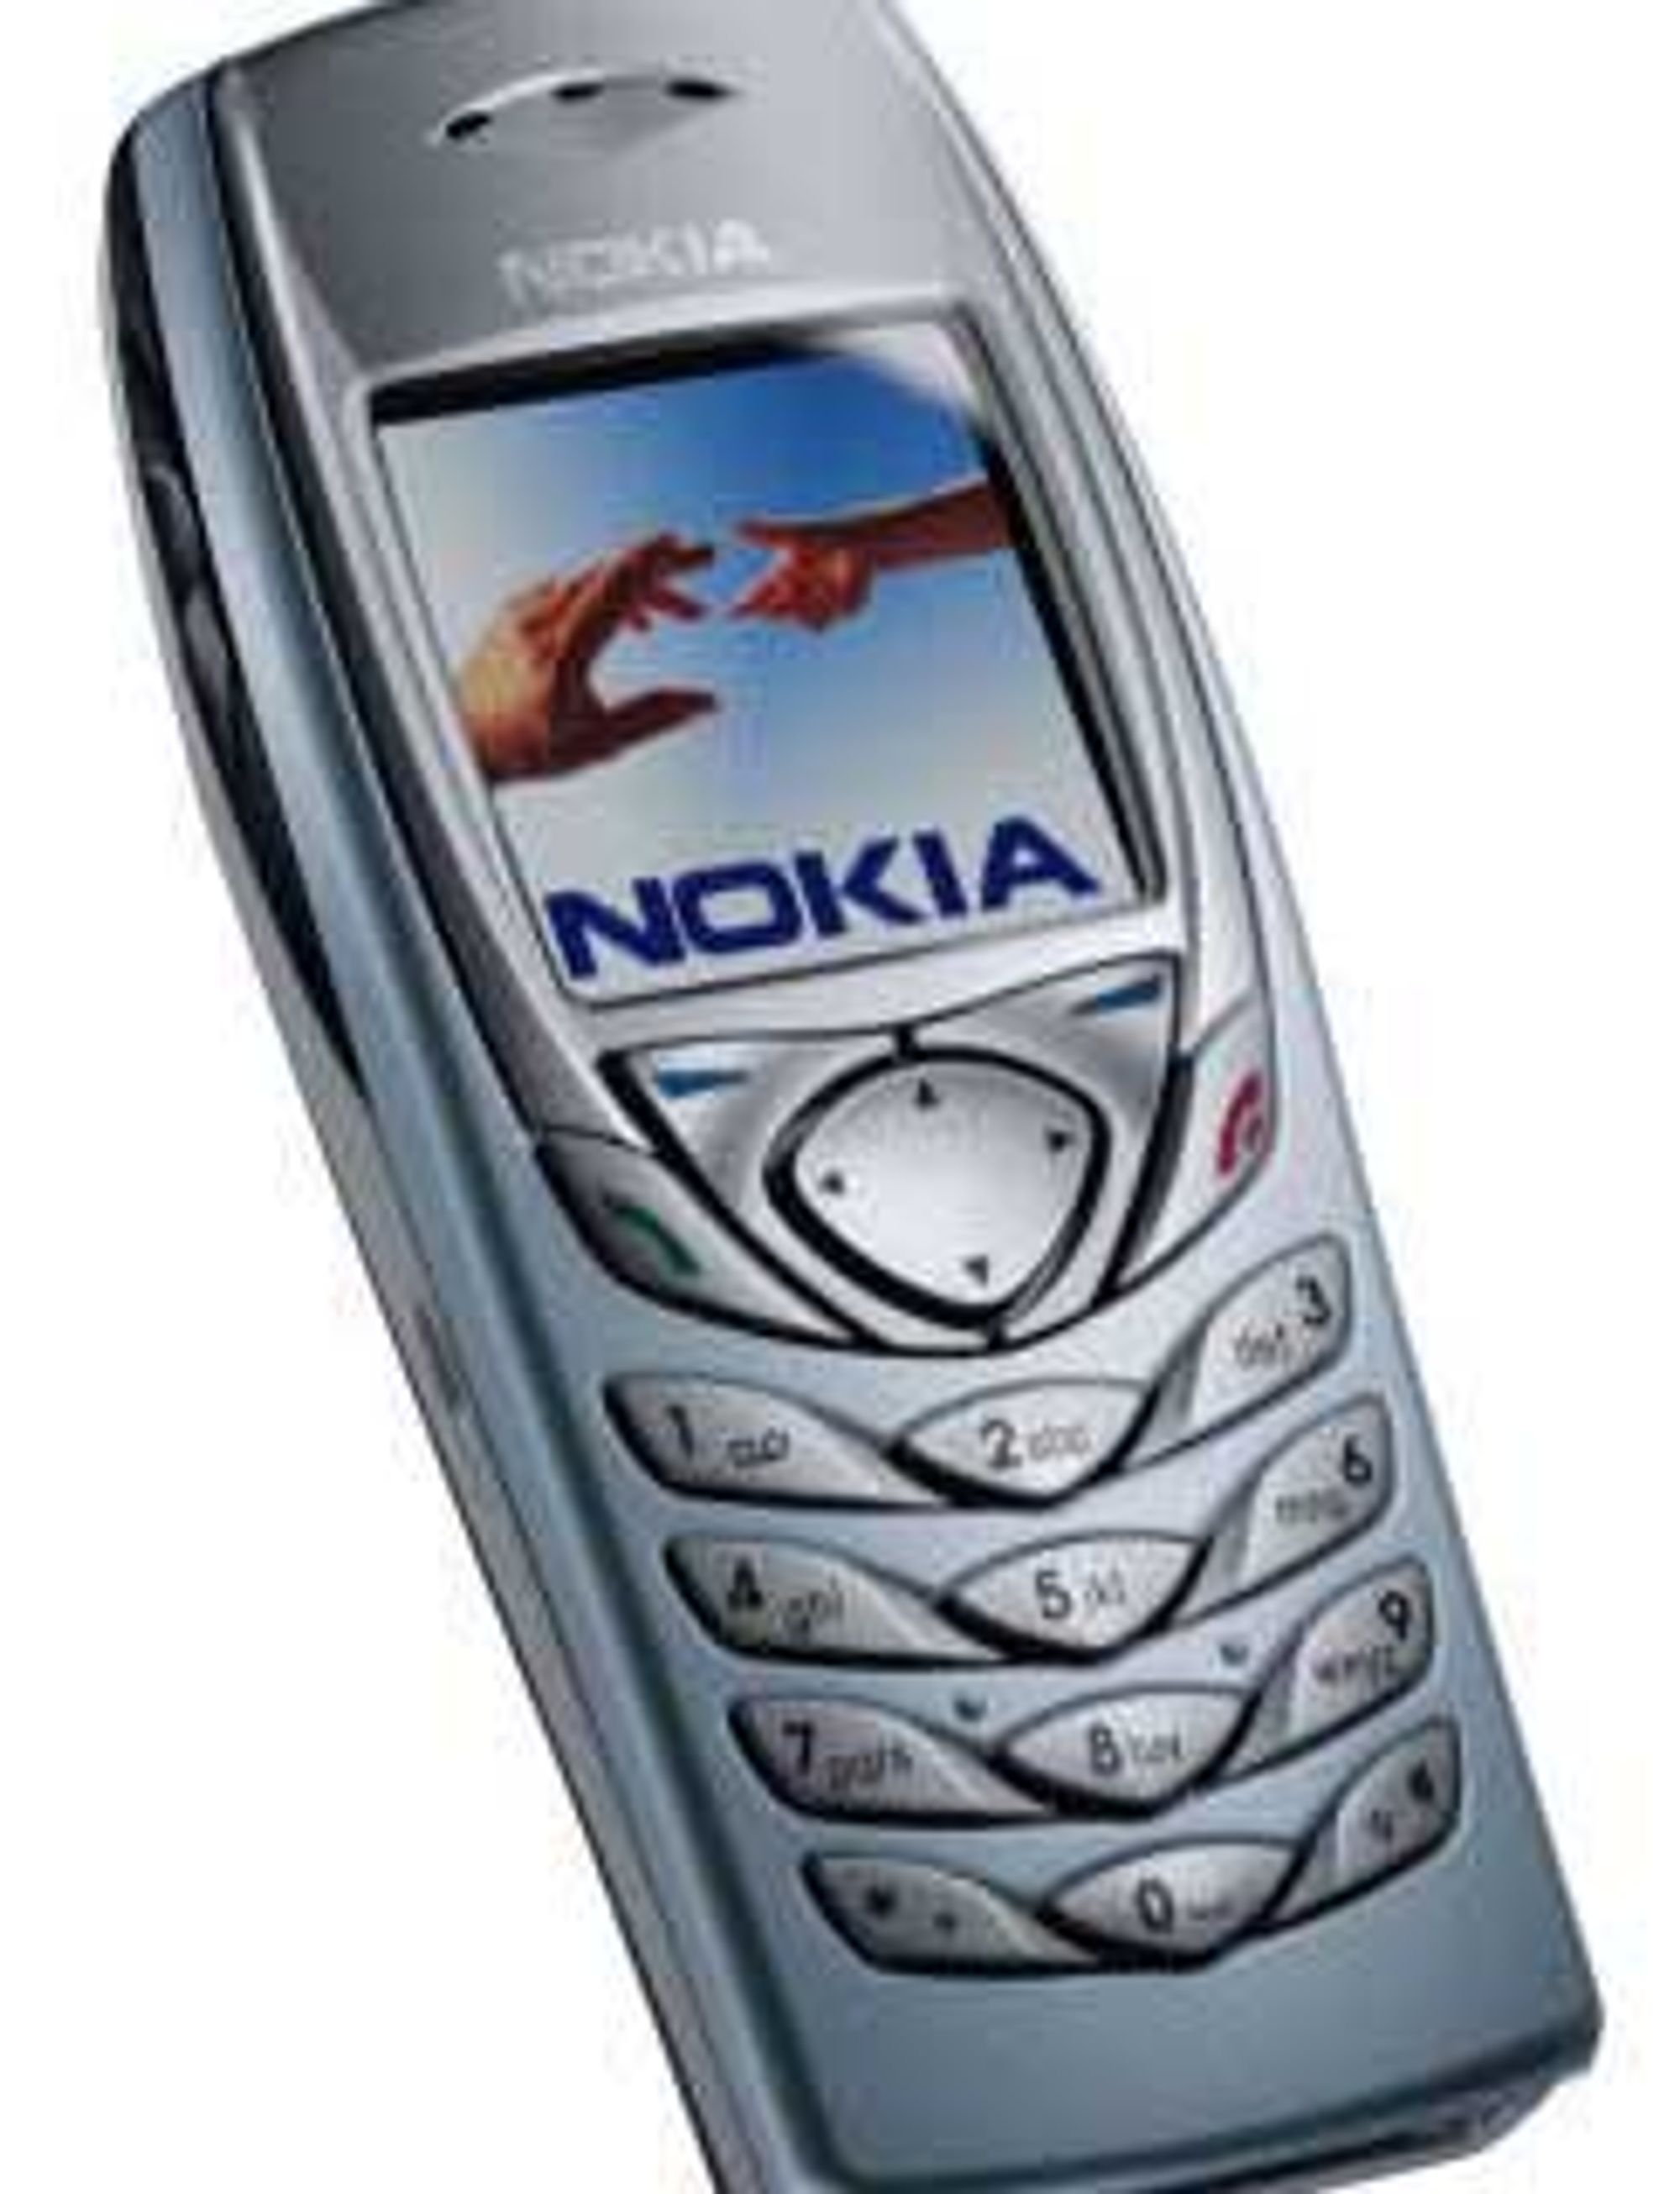 Jo eldre, jo mer Nokia